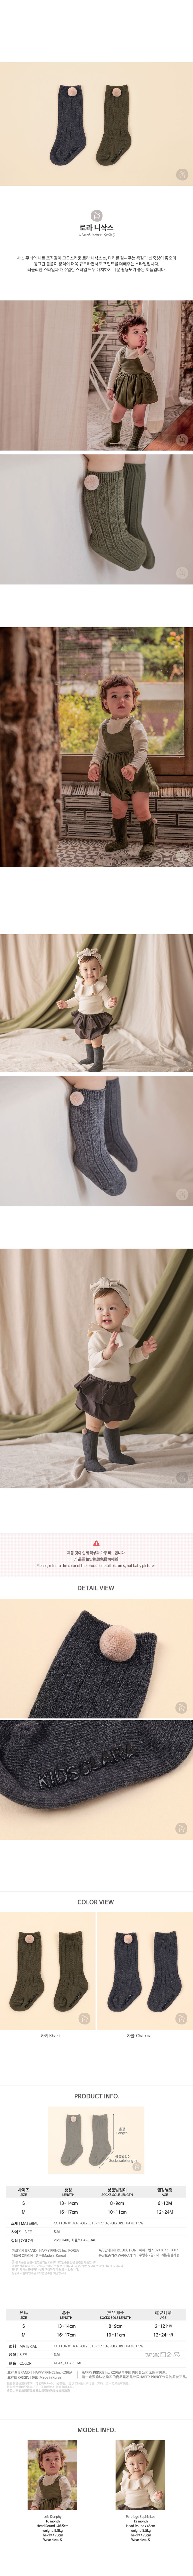 韓國 Happy Prince Laura毛球嬰兒及膝襪 寶寶襪兒童襪 卡其綠M